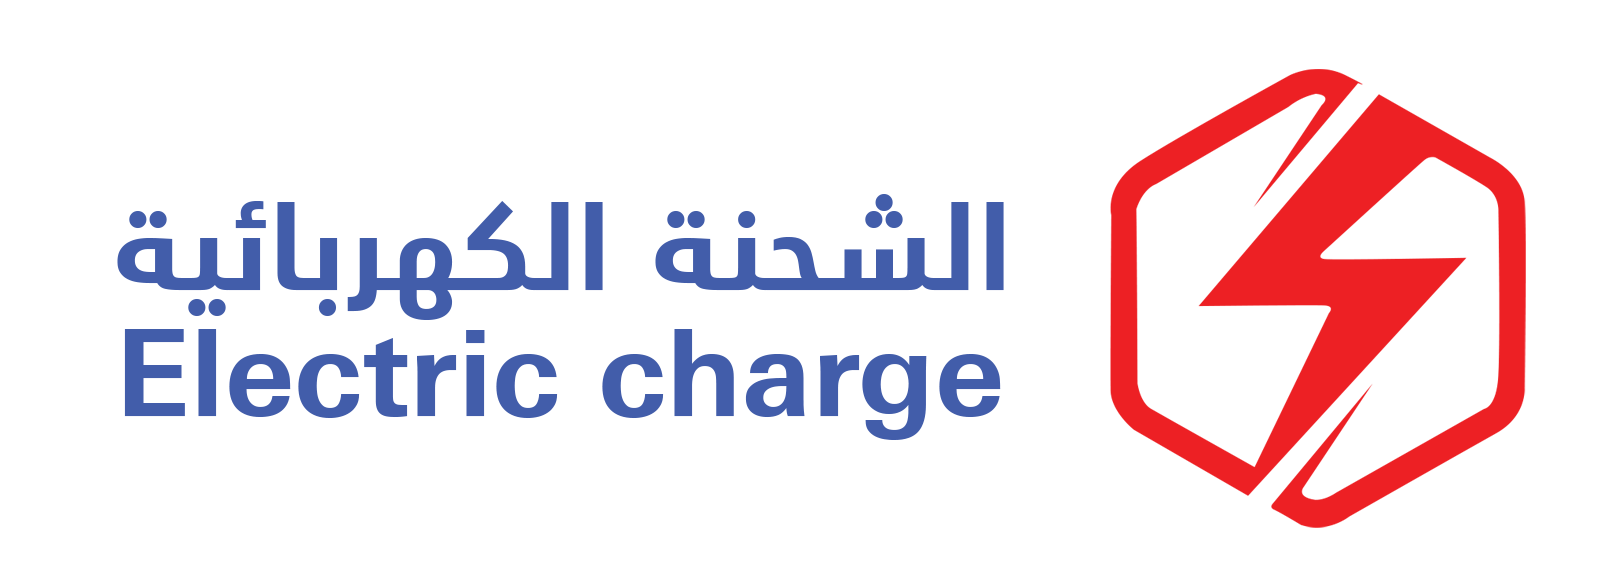 شركة الشحنة الكهربائية للتجارة Logo